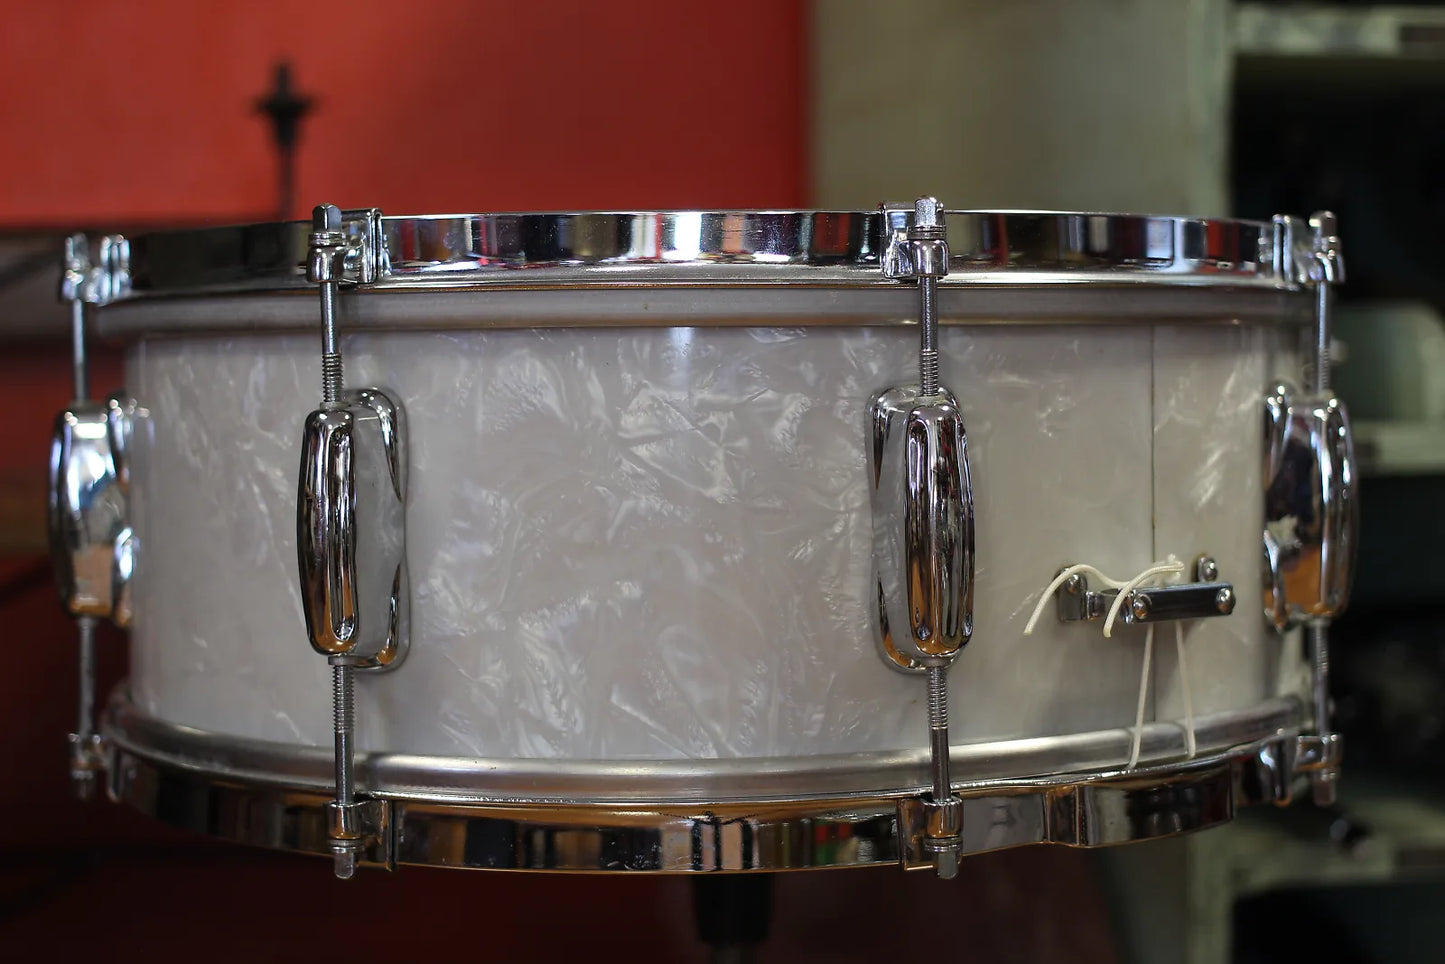 1962 Slingerland 5.5"X14" Student Model Snare Drum in White Marine Pearl